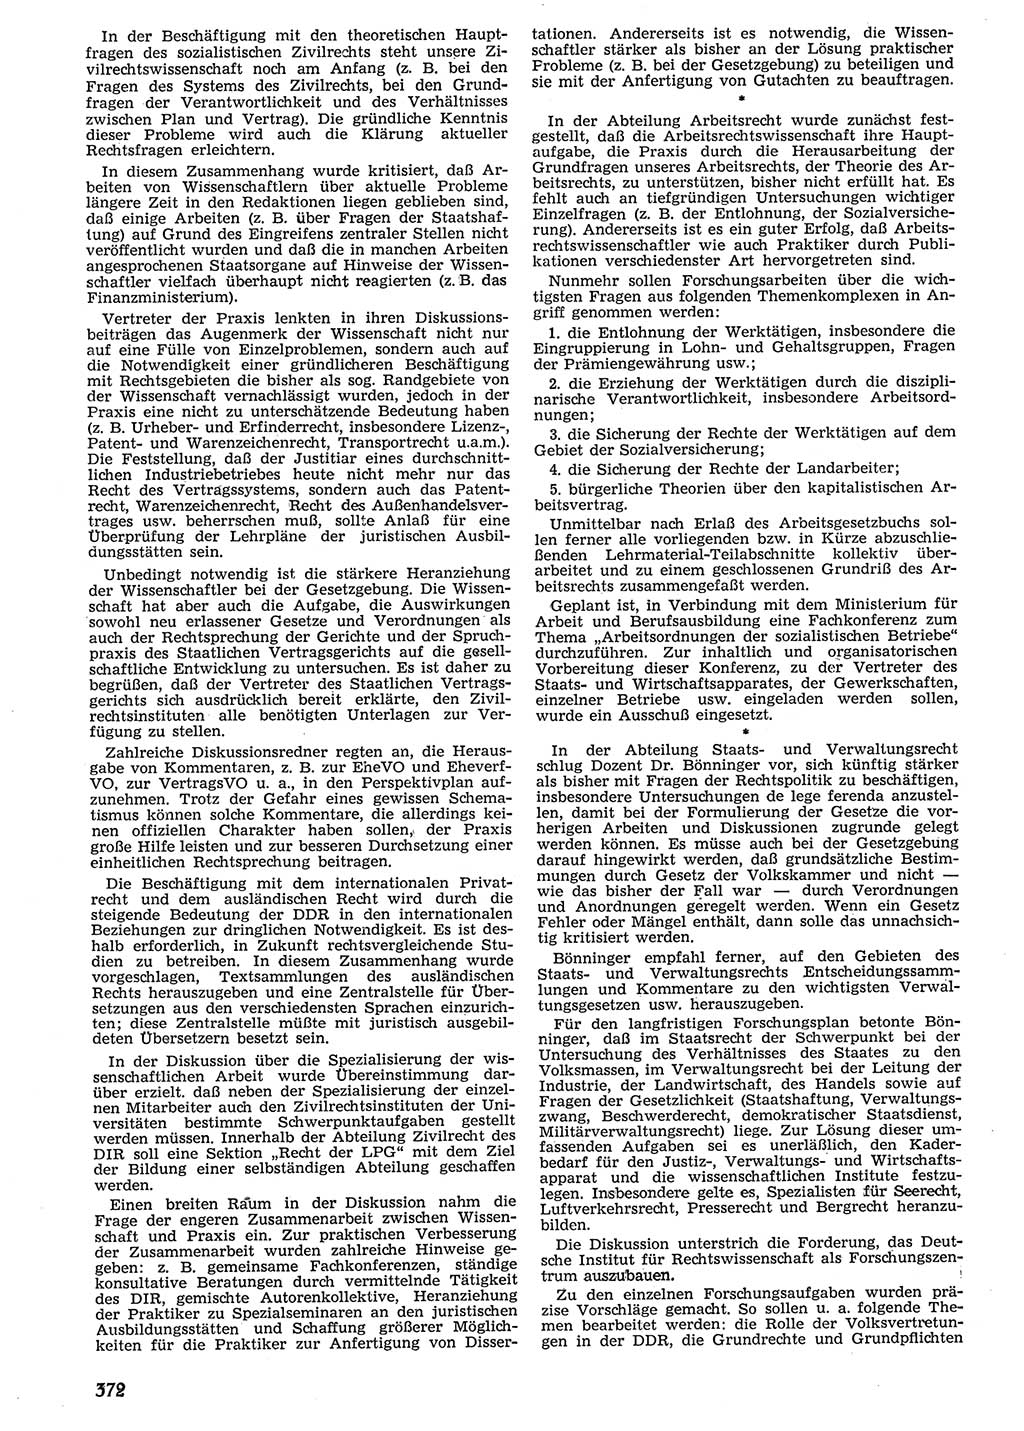 Neue Justiz (NJ), Zeitschrift für Recht und Rechtswissenschaft [Deutsche Demokratische Republik (DDR)], 10. Jahrgang 1956, Seite 372 (NJ DDR 1956, S. 372)